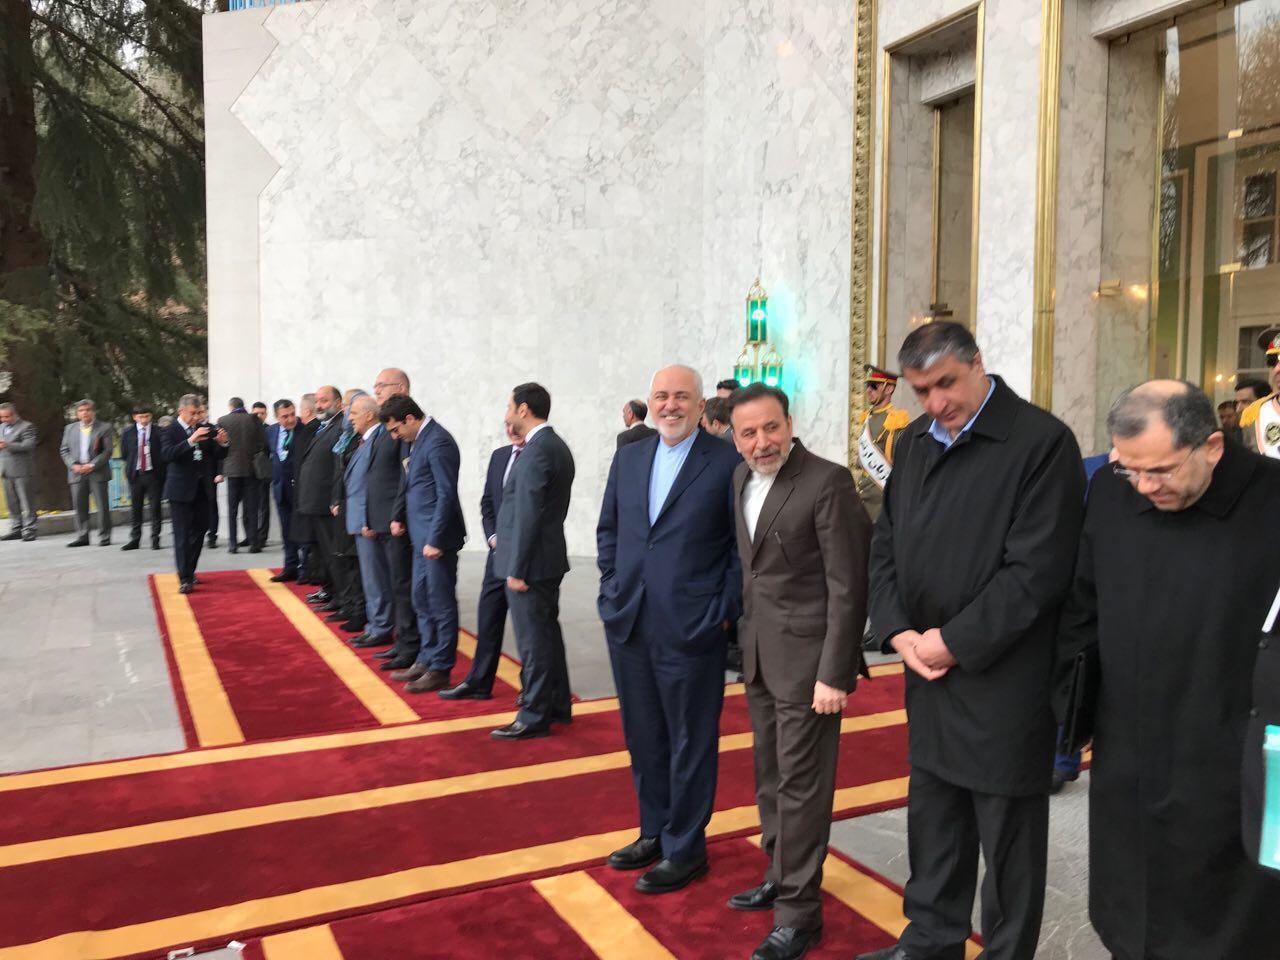 حضور ظریف در مراسم استقبال از رییس جمهور ارمنستان و خوش و بش با روحانی/عکس